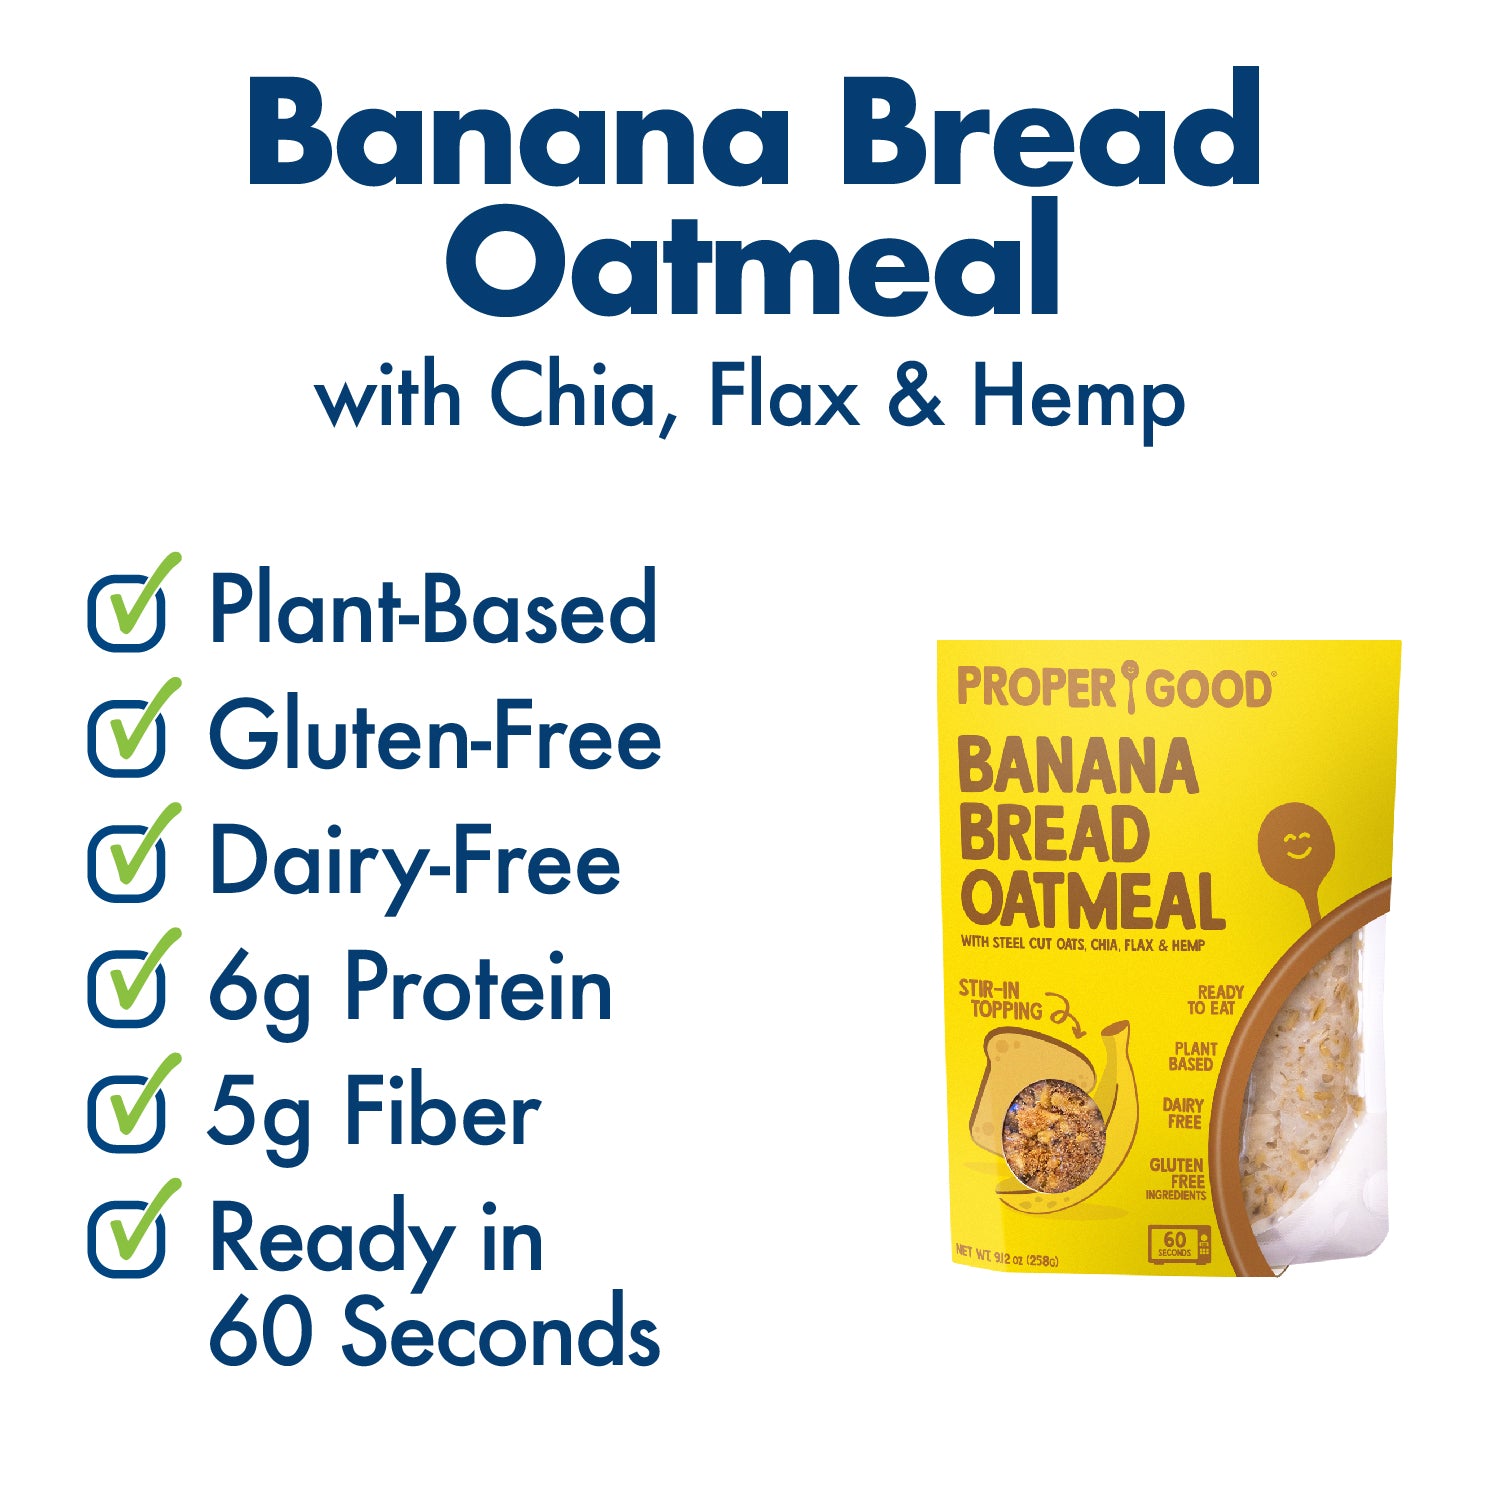 Banana Bread Oatmeal Benefits - Eat Proper Good